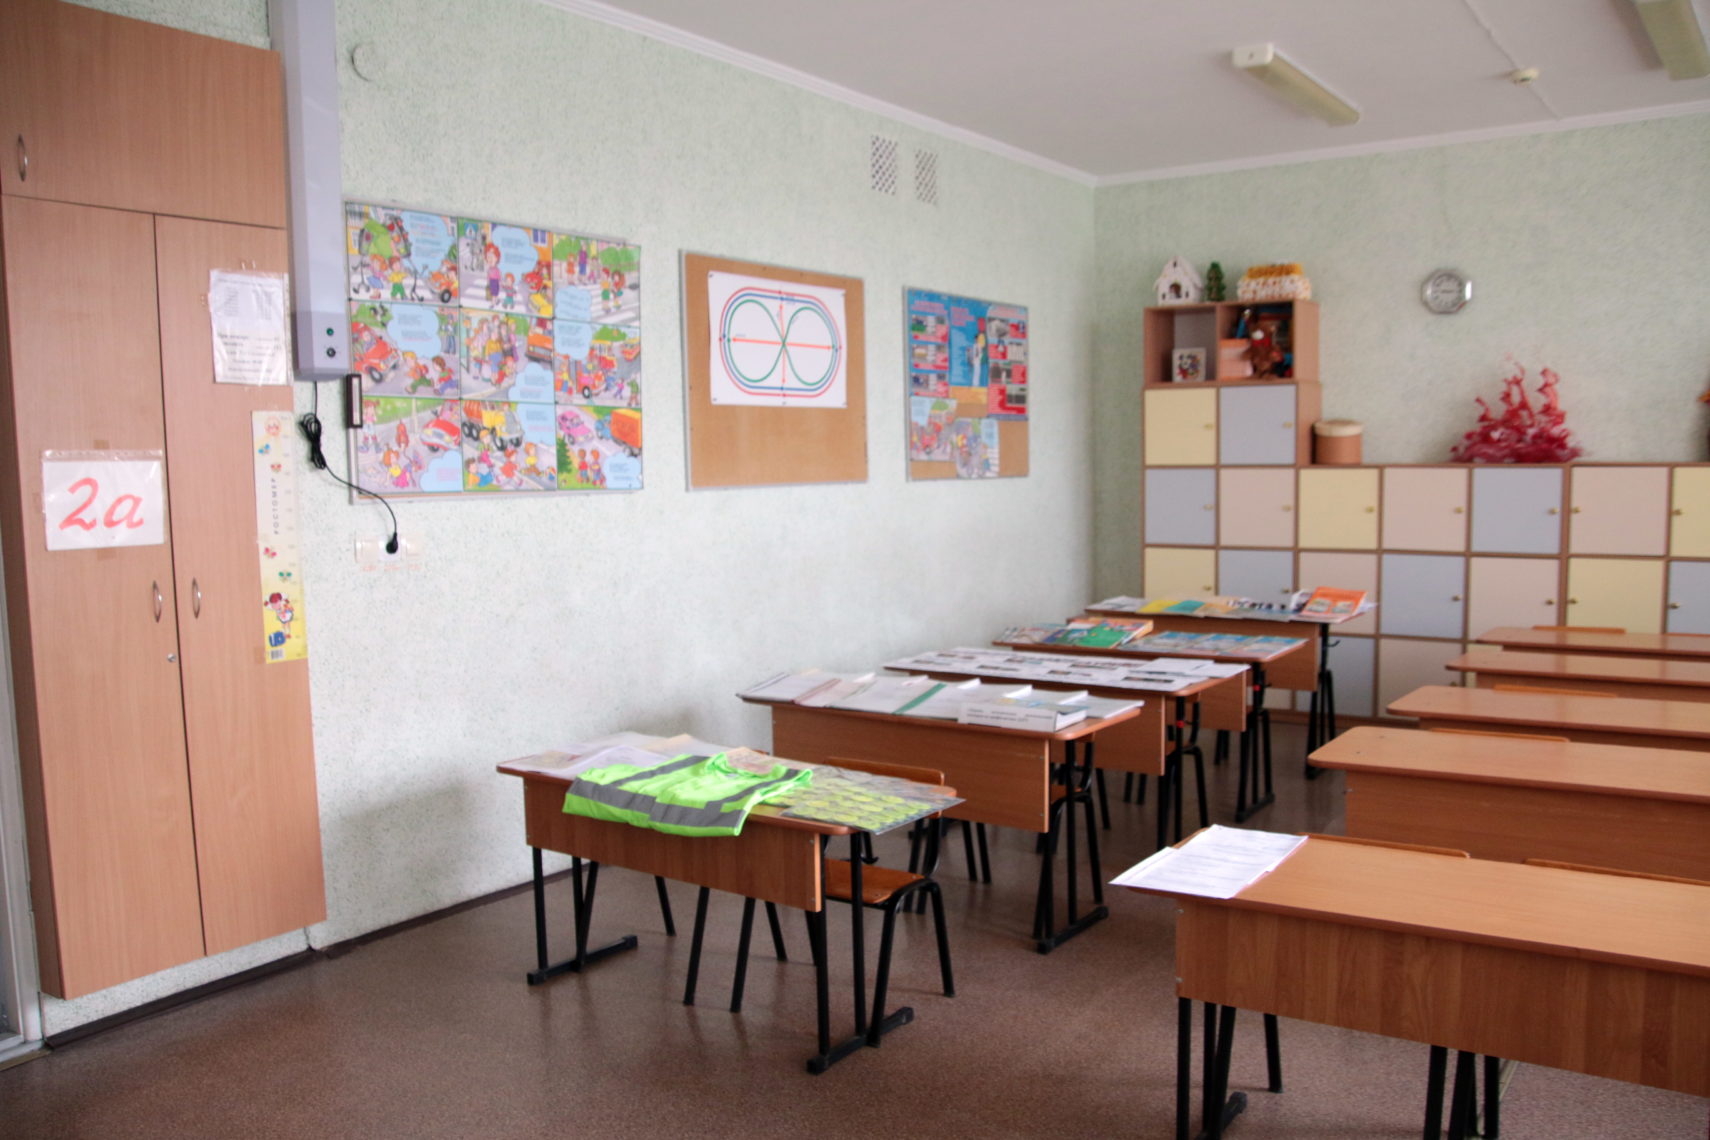 Учебный год уже близко. В Магнитогорске началась приемка школ и детских садов